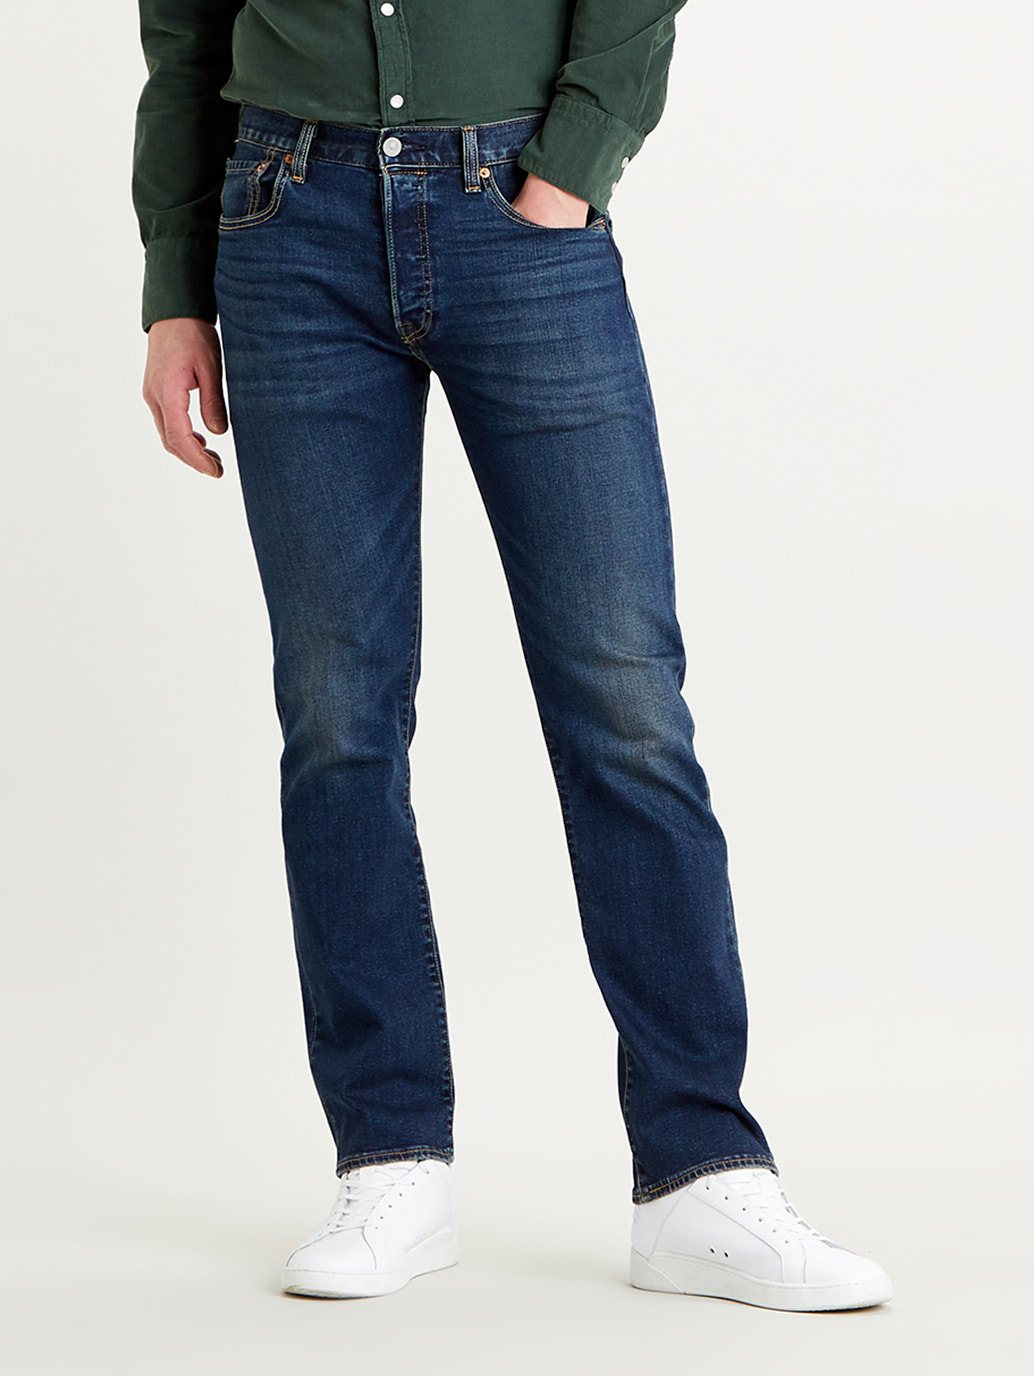 Buy Levi's® Men's 501® Original Jeans | Levi’s Official Online Store SG